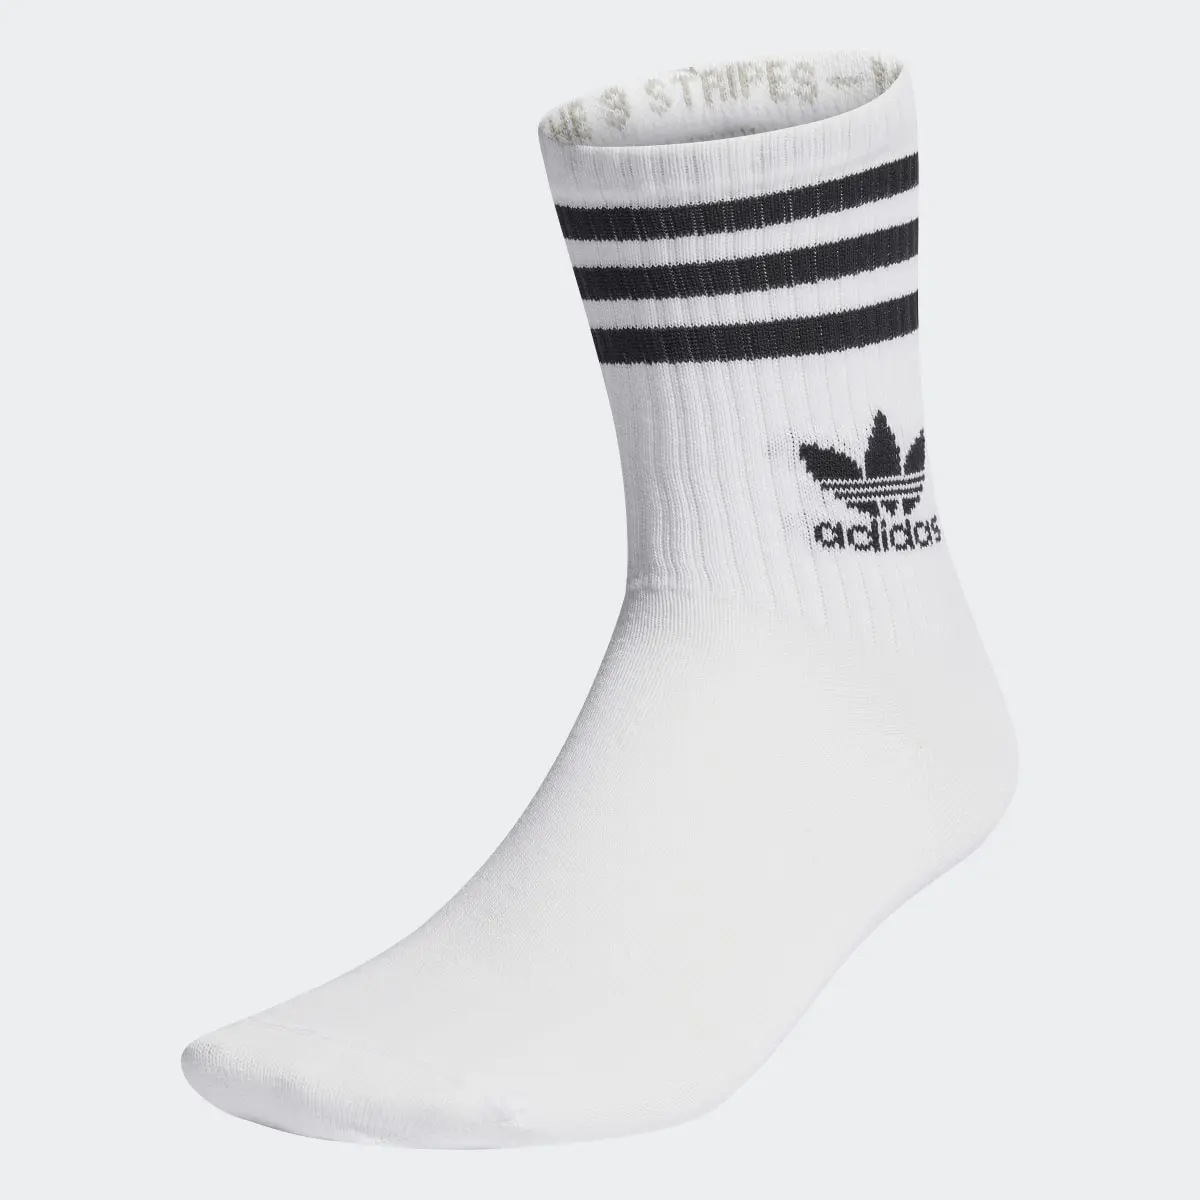 Adidas Mid Cut Bilekli Çorap - 3 Çift. 2